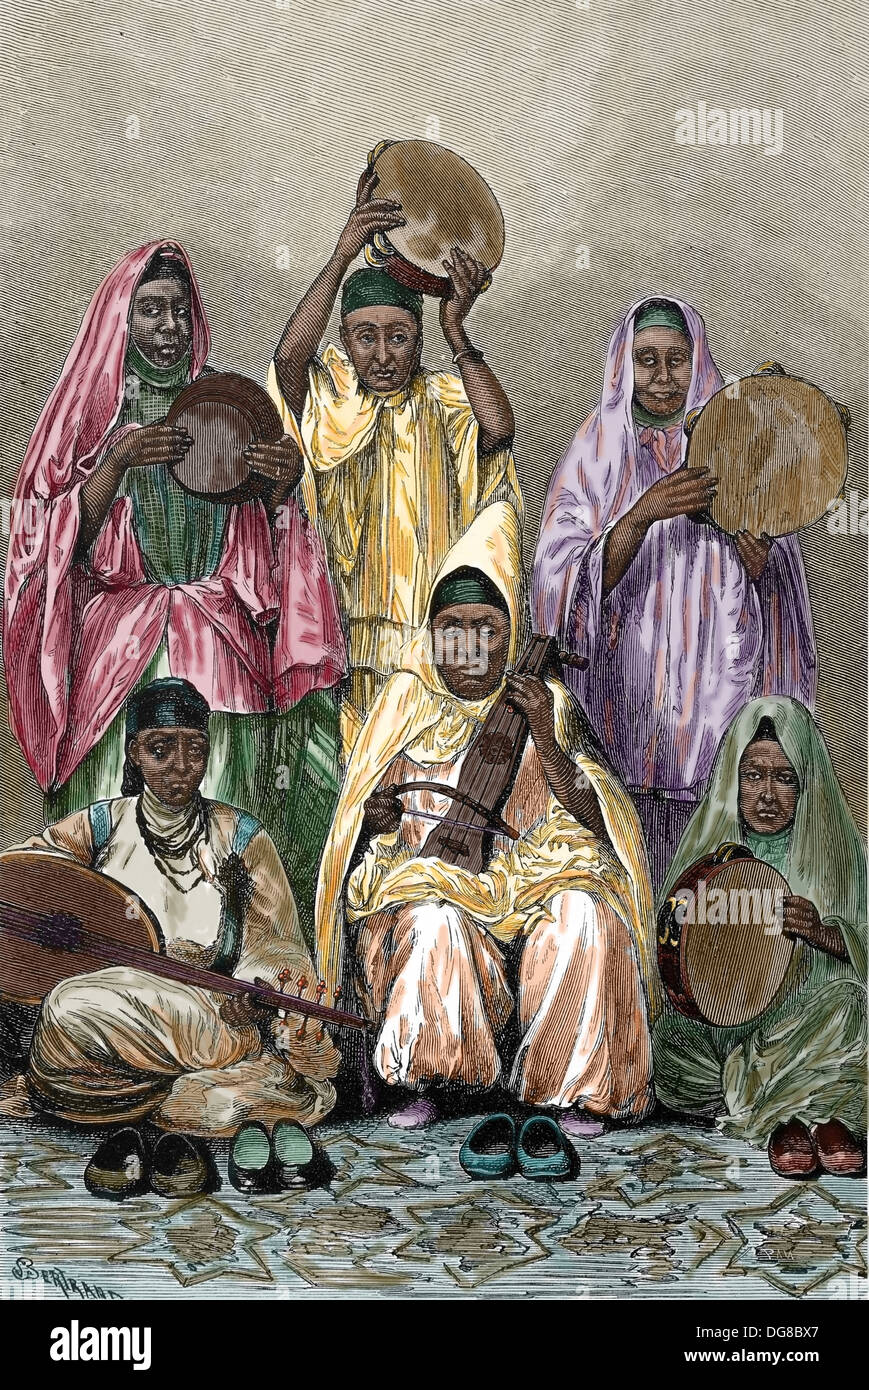 Nordafrika. Algerien /Tunisia. Tuareg-Musiker. des 19. Jahrhunderts. Gravur. Spätere Färbung. Stockfoto